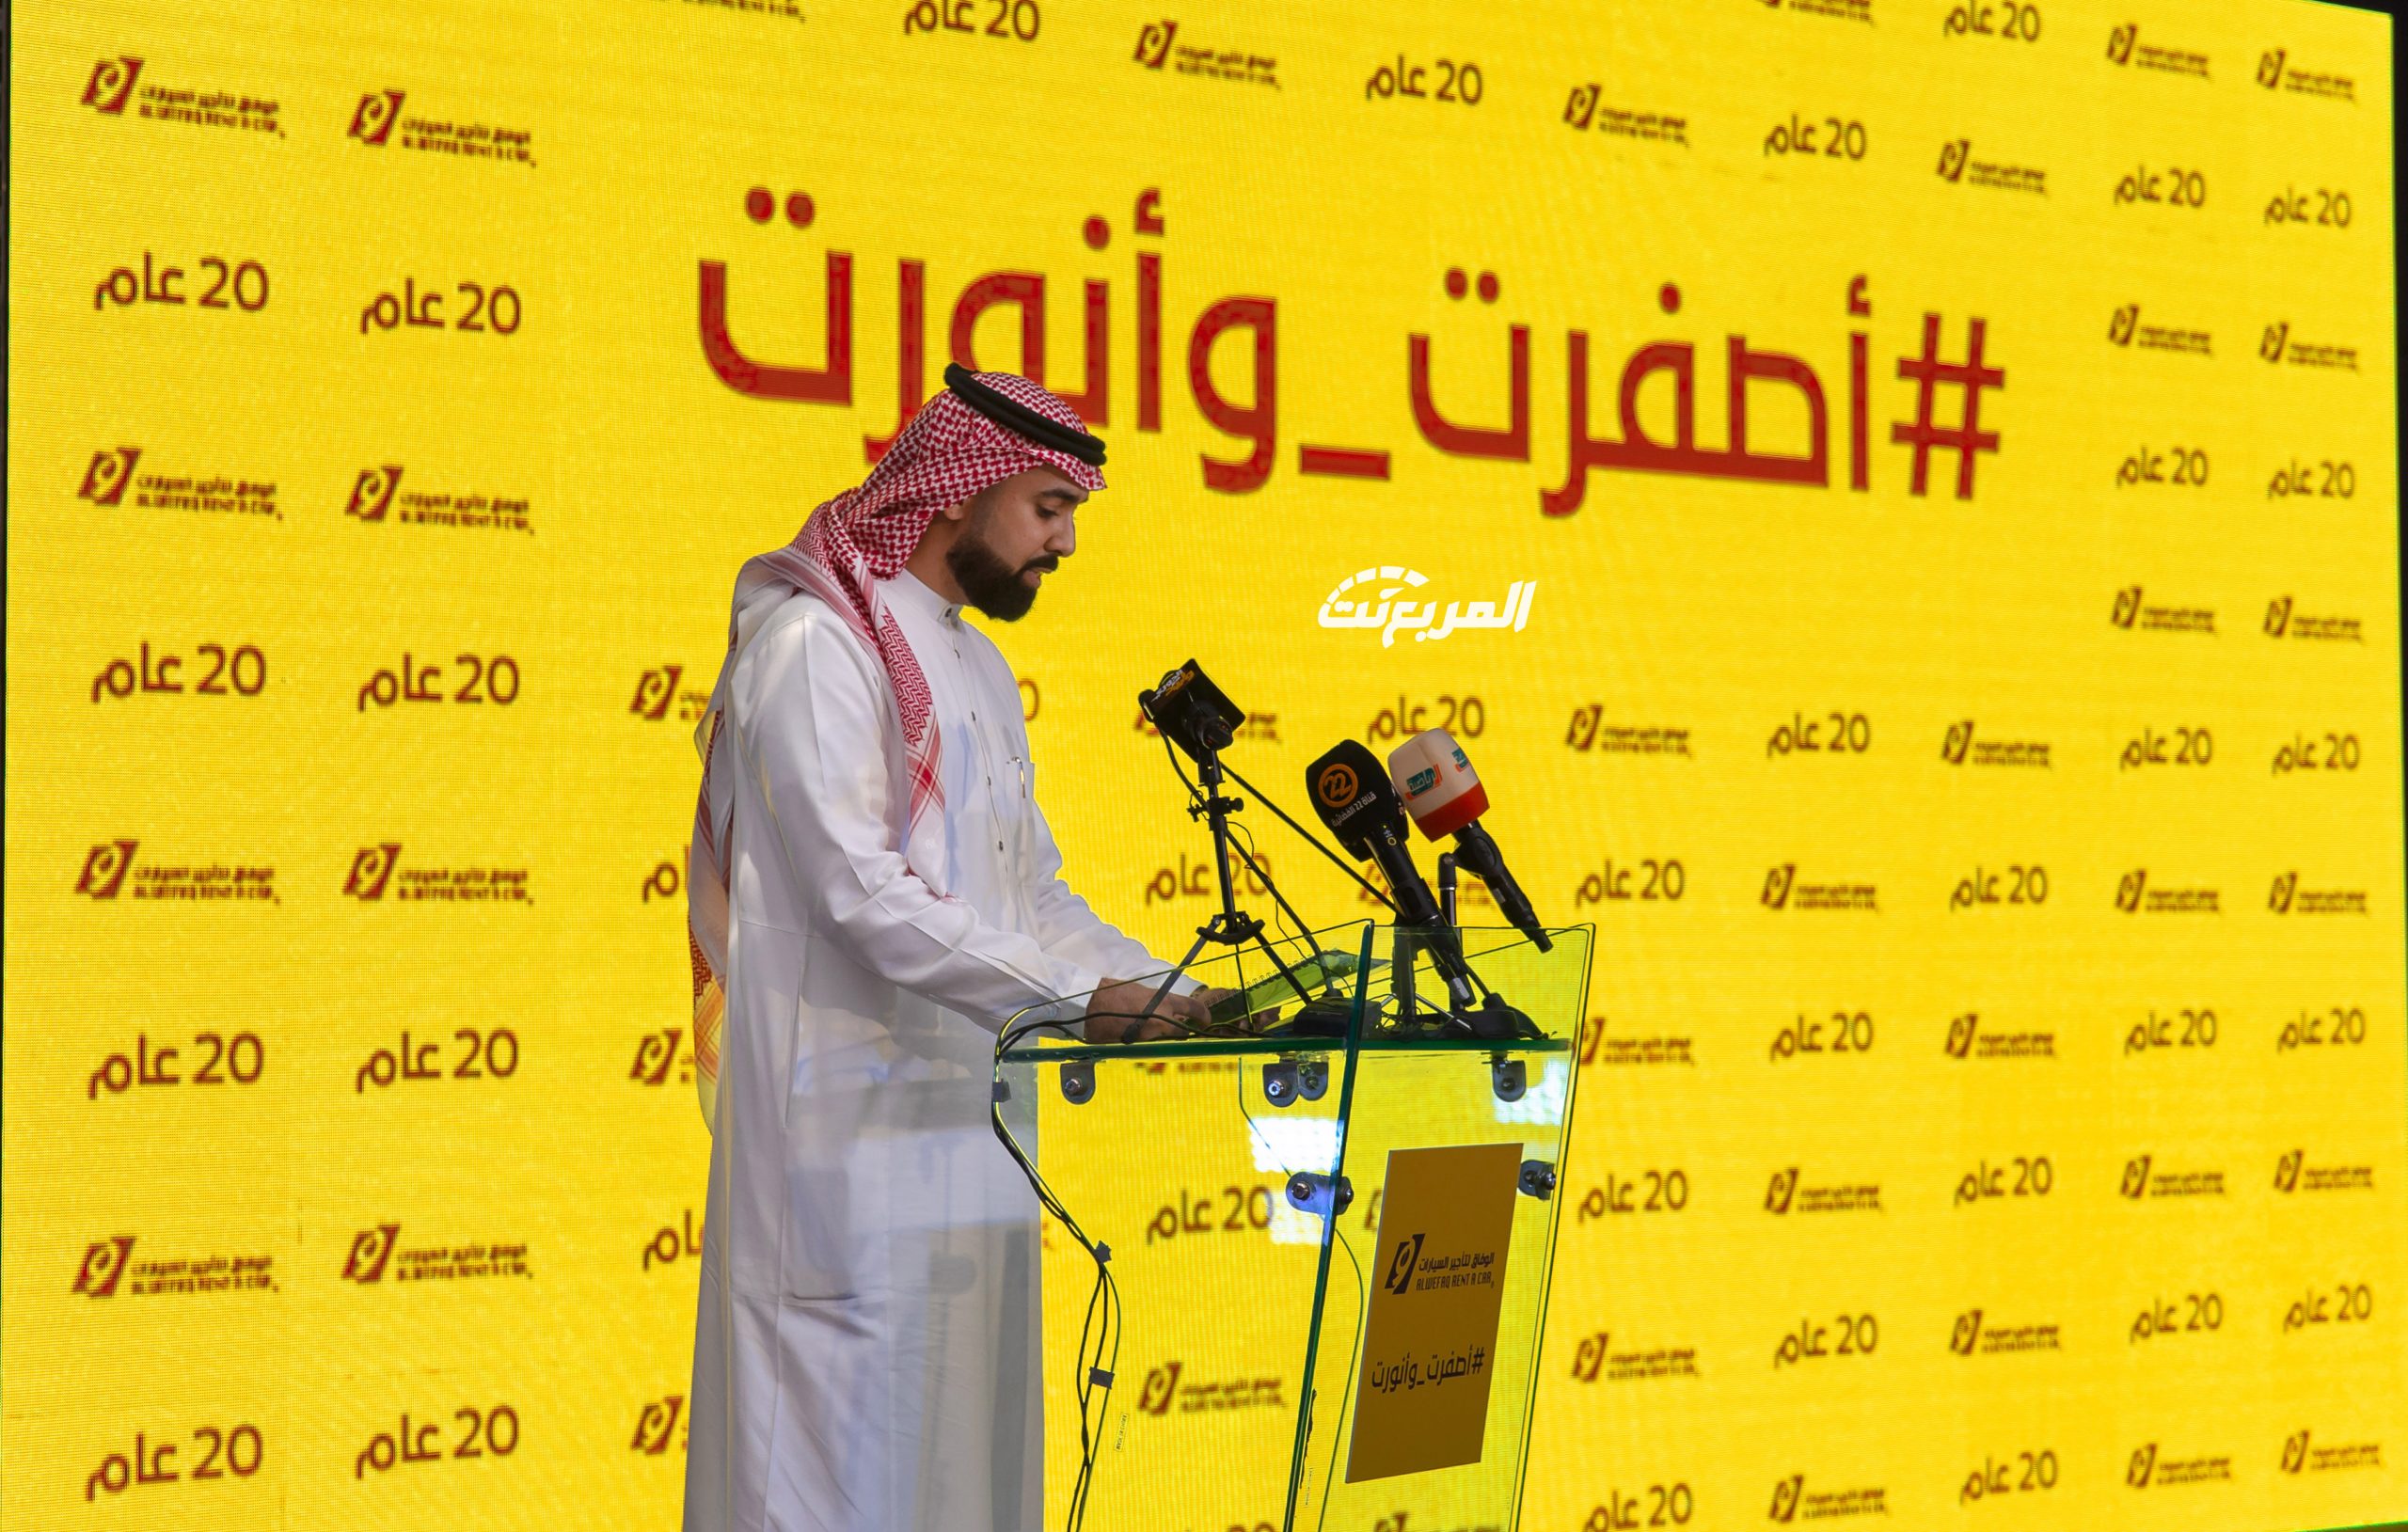 صور من حفل تدشين هوية الوفاق الجديدة ( يلو ) 27